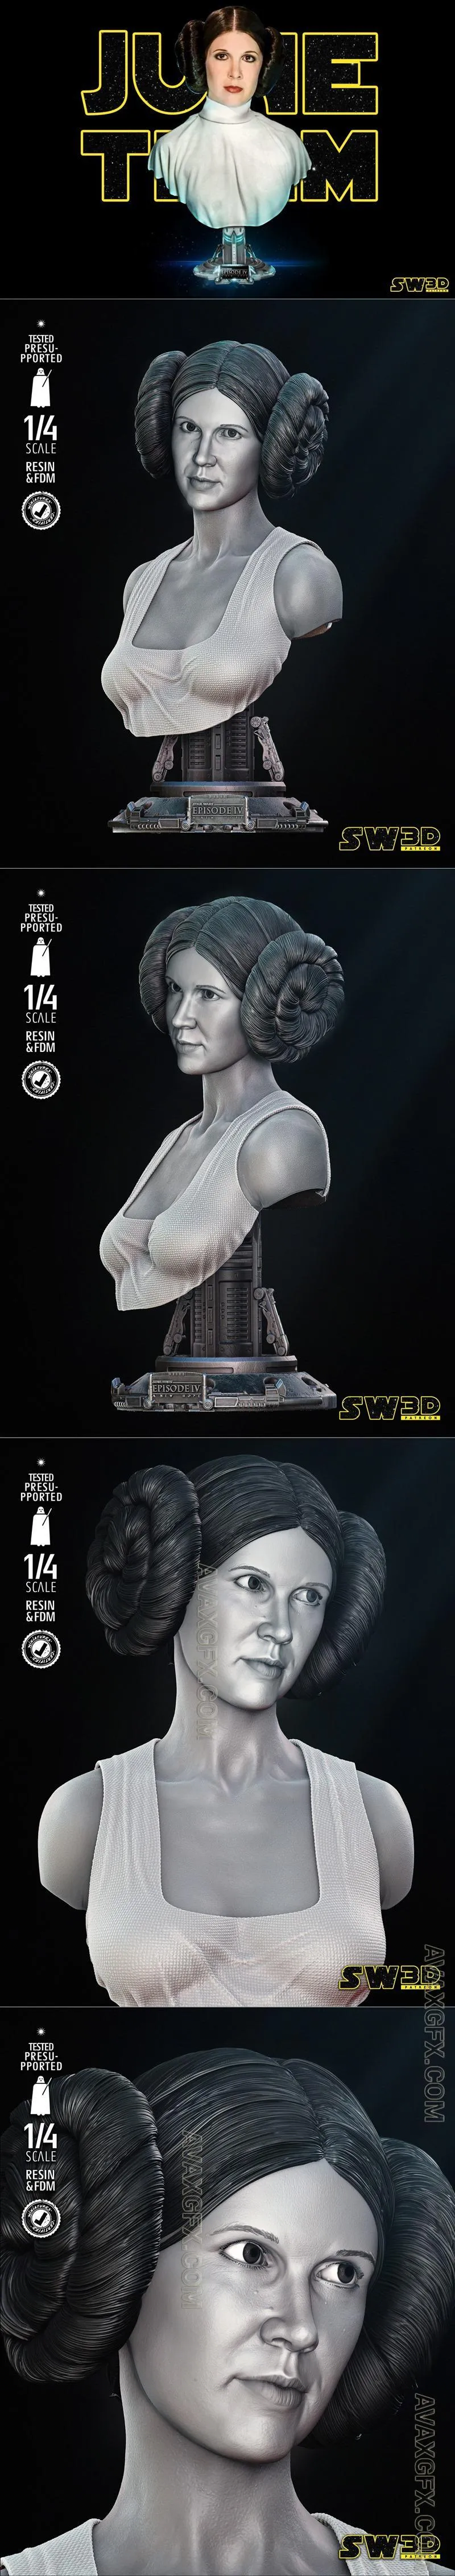 SW3D - Leia Portrait Bust - STL 3D Model